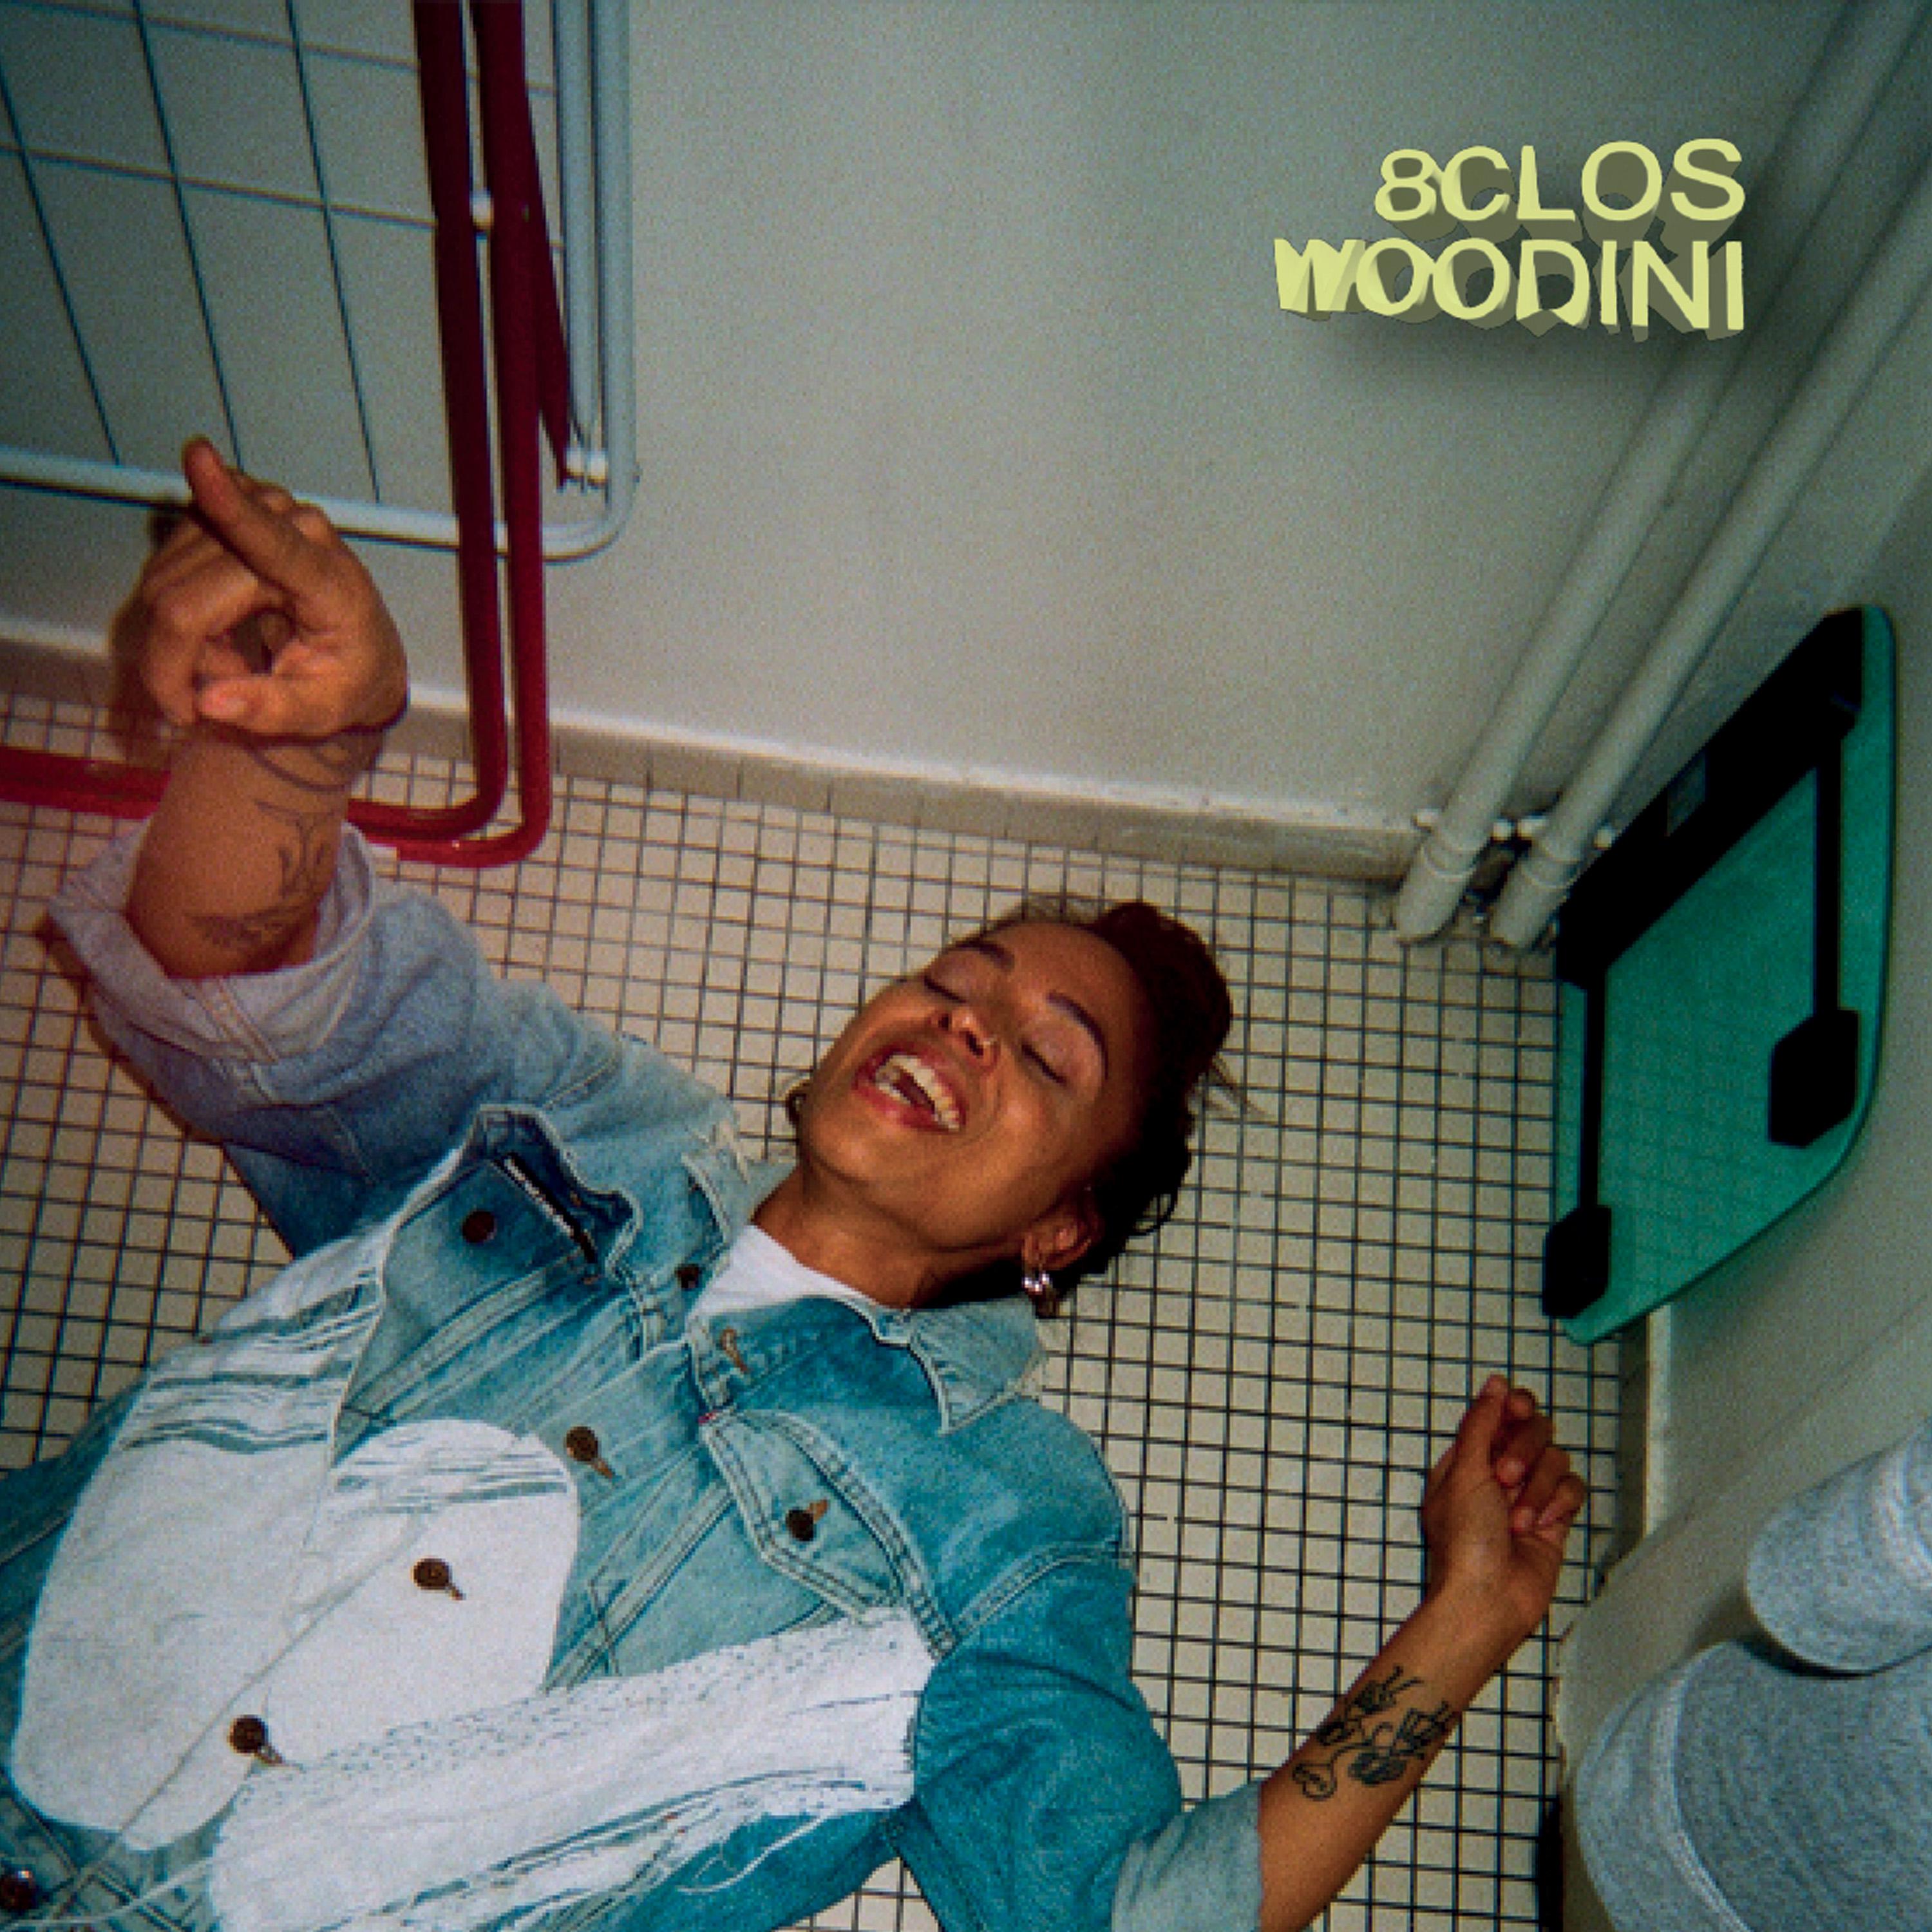 Woodini - 8clos